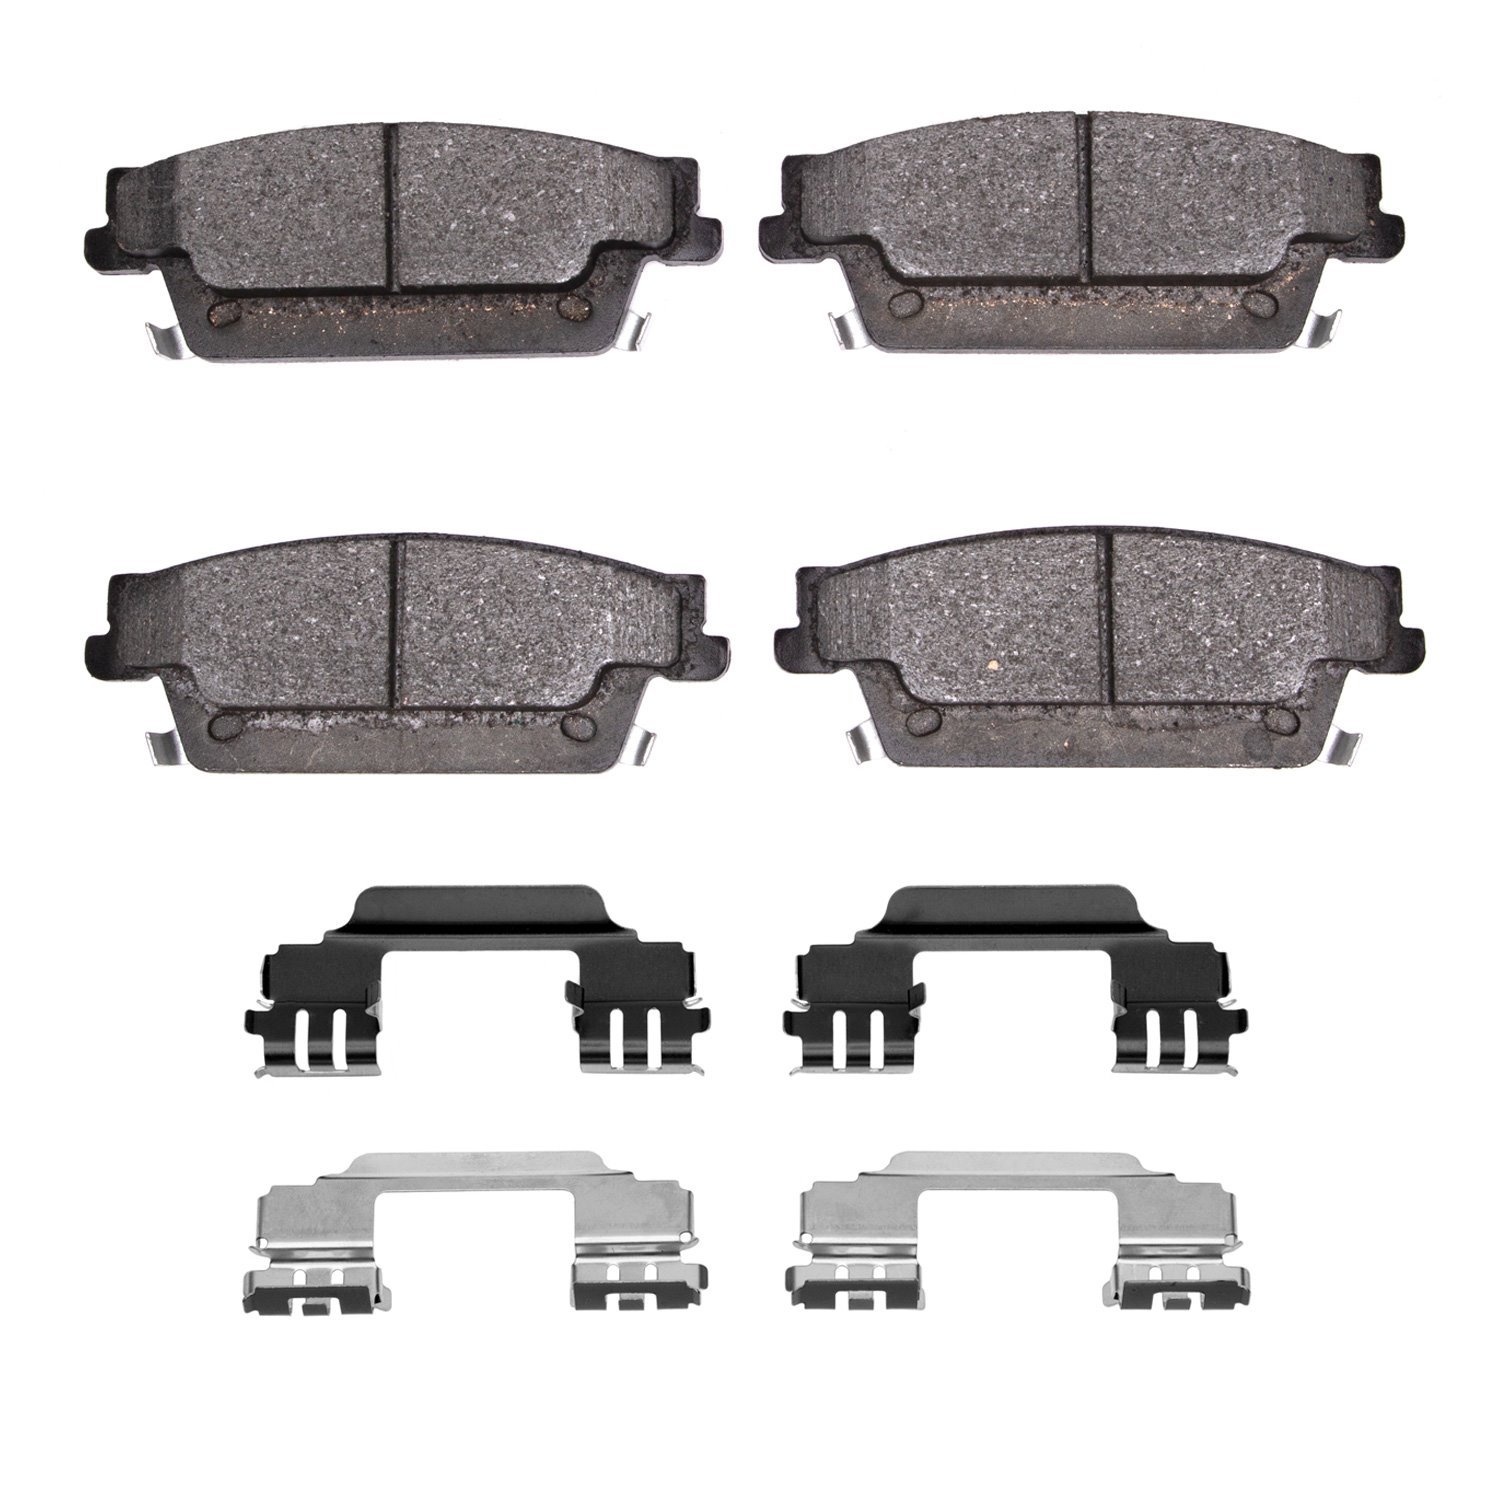 1551-1020-01 5000 Advanced Low-Metallic Brake Pads & Hardware Kit, 2004-2011 GM, Position: Rear